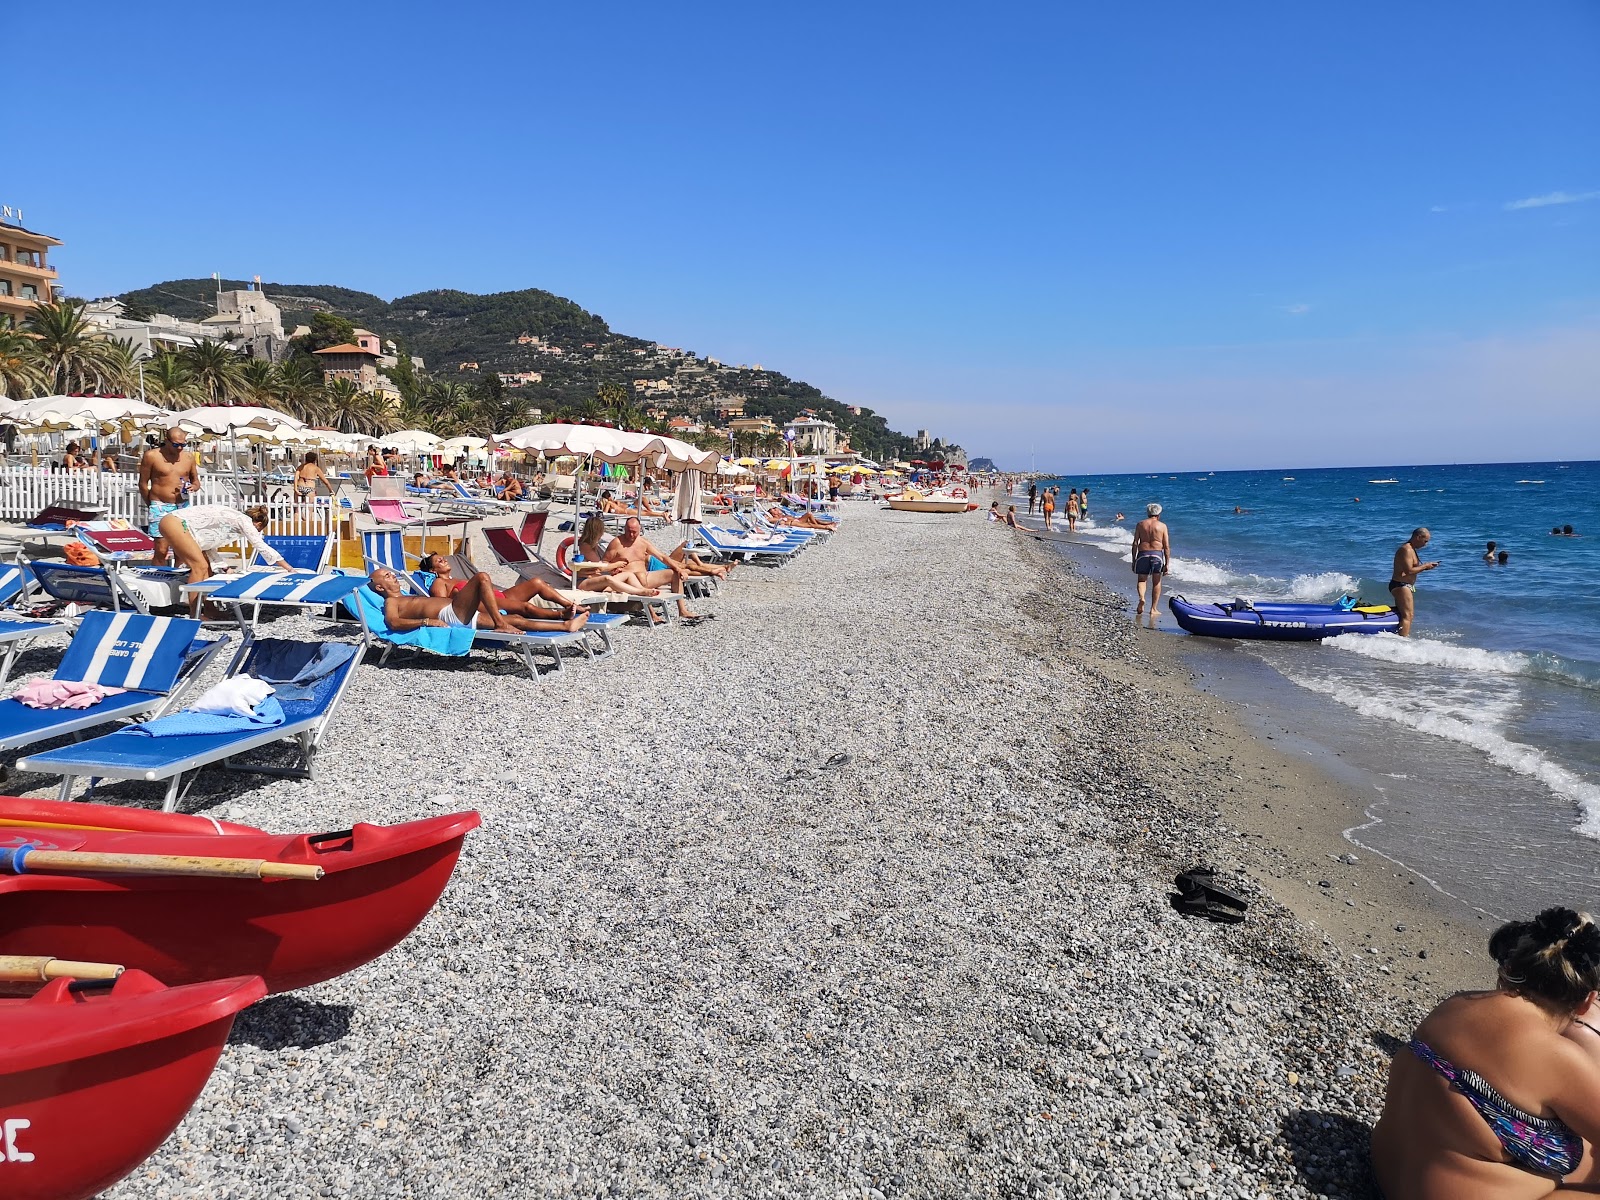 Foto von Spiaggia libera Attrezzata mit schwarzer sand&kies Oberfläche